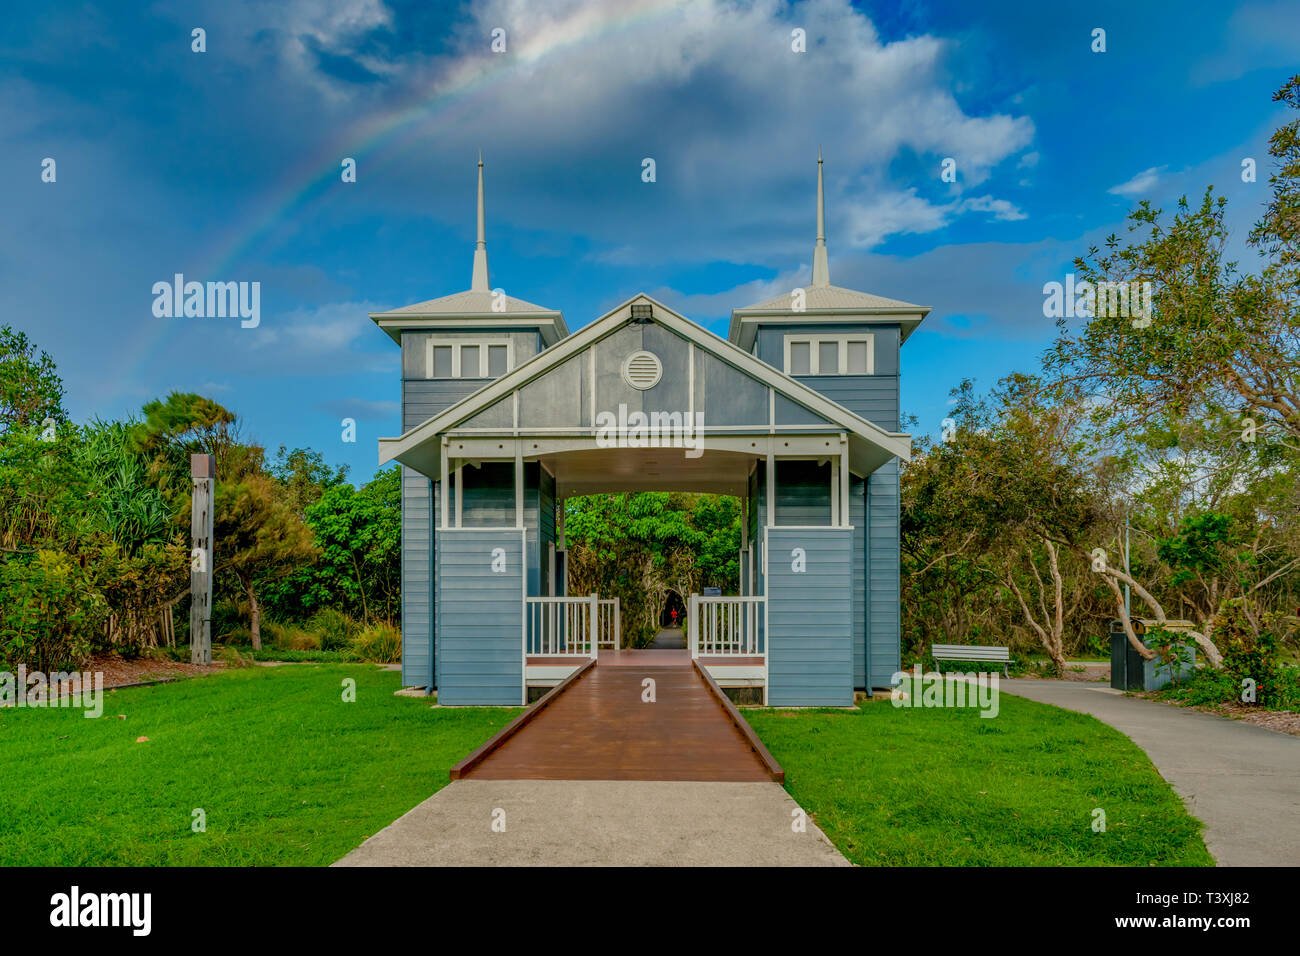 Un colorato e accattivante wc pubblico nella città di mare, Marcoola, Australia si preannuncia come qualcosa da un set del Truman Show Foto Stock